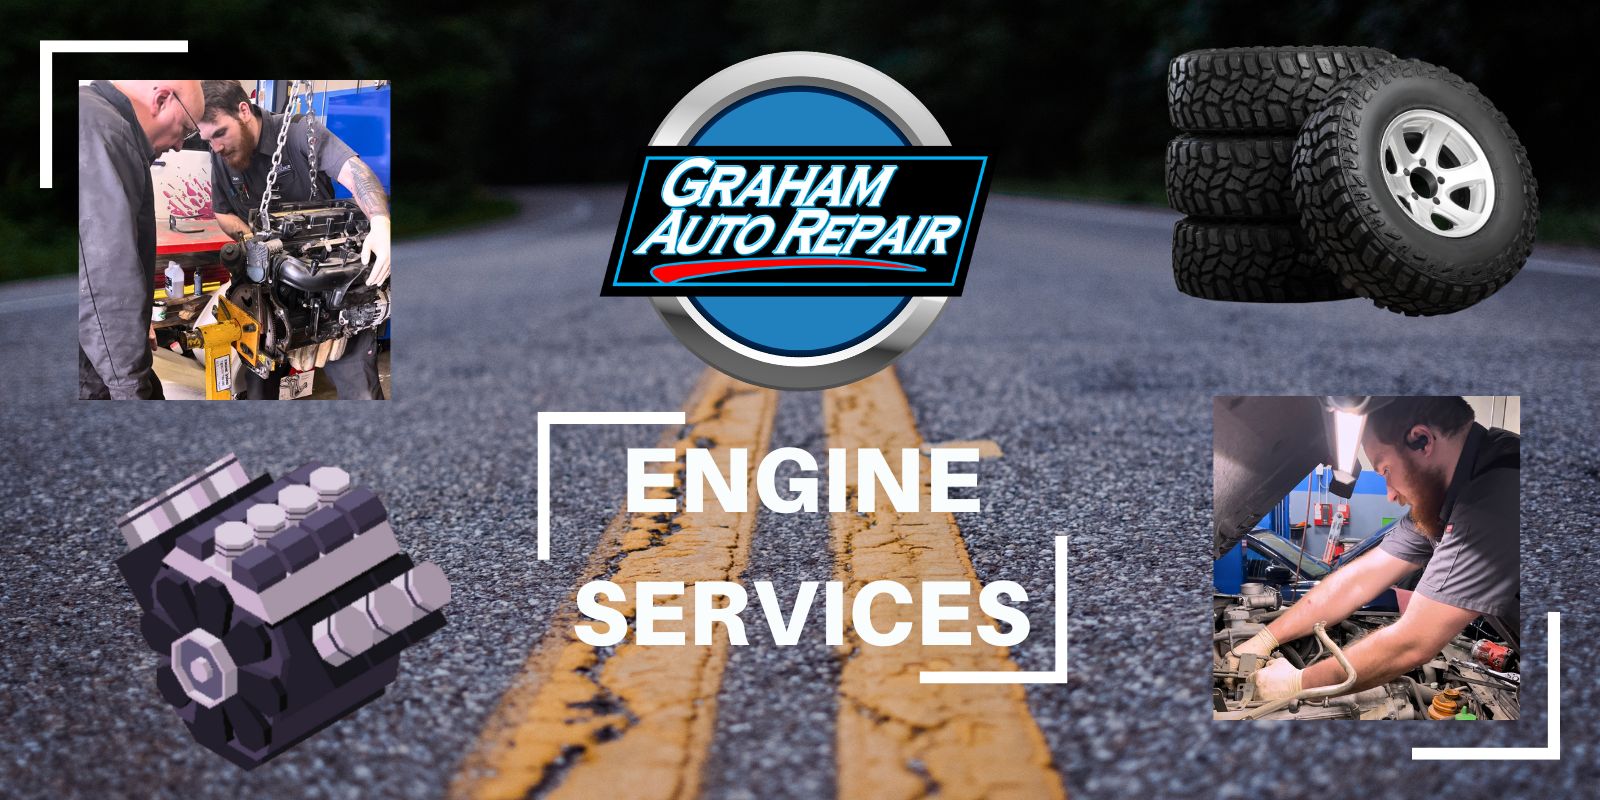 Engine Services at Graham Auto Repair in Yelm WA and Graham WA